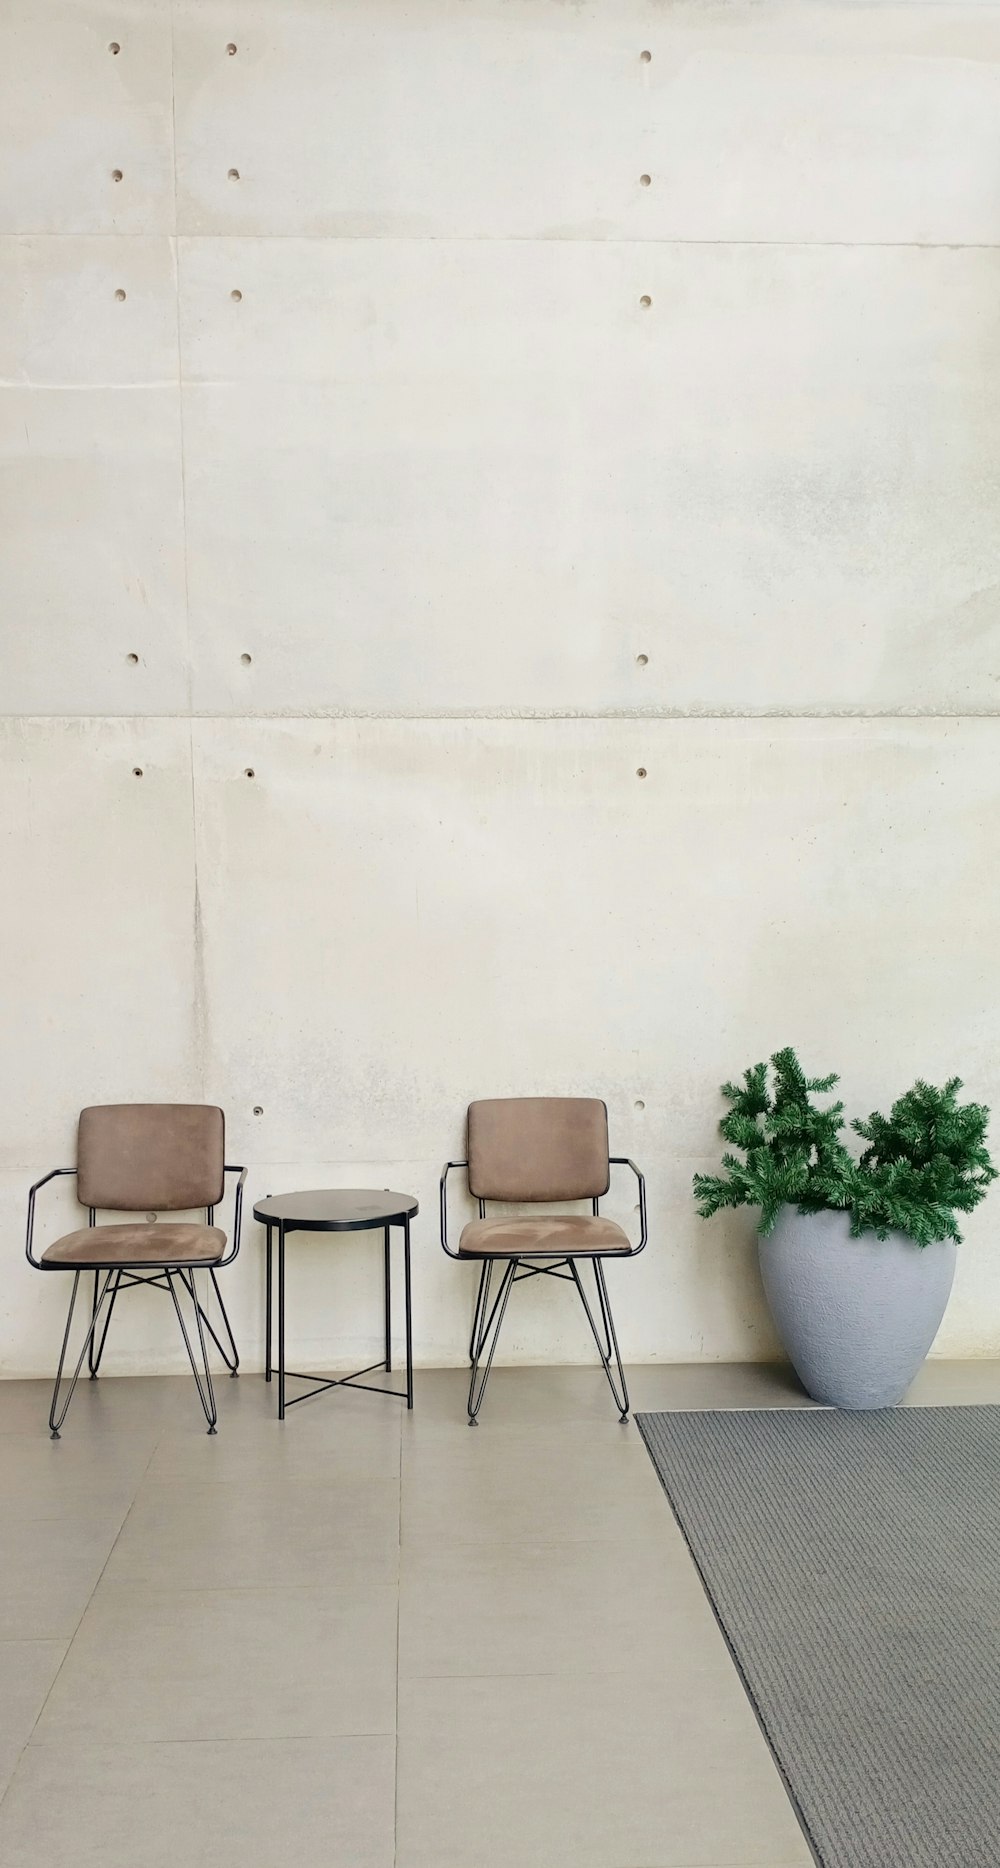 Un par de sillas sentadas al lado de una planta